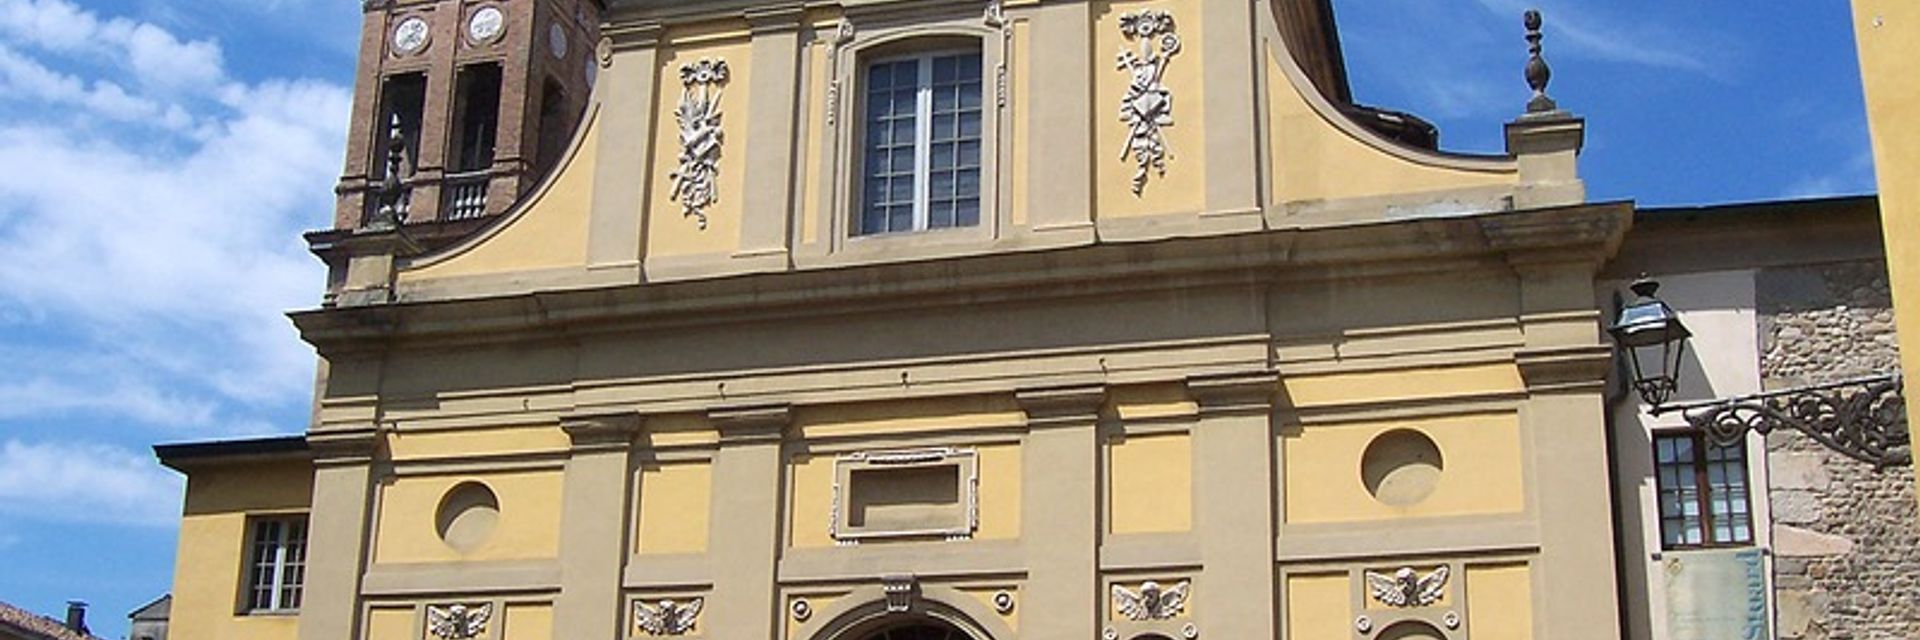 Galerie San Ludovico